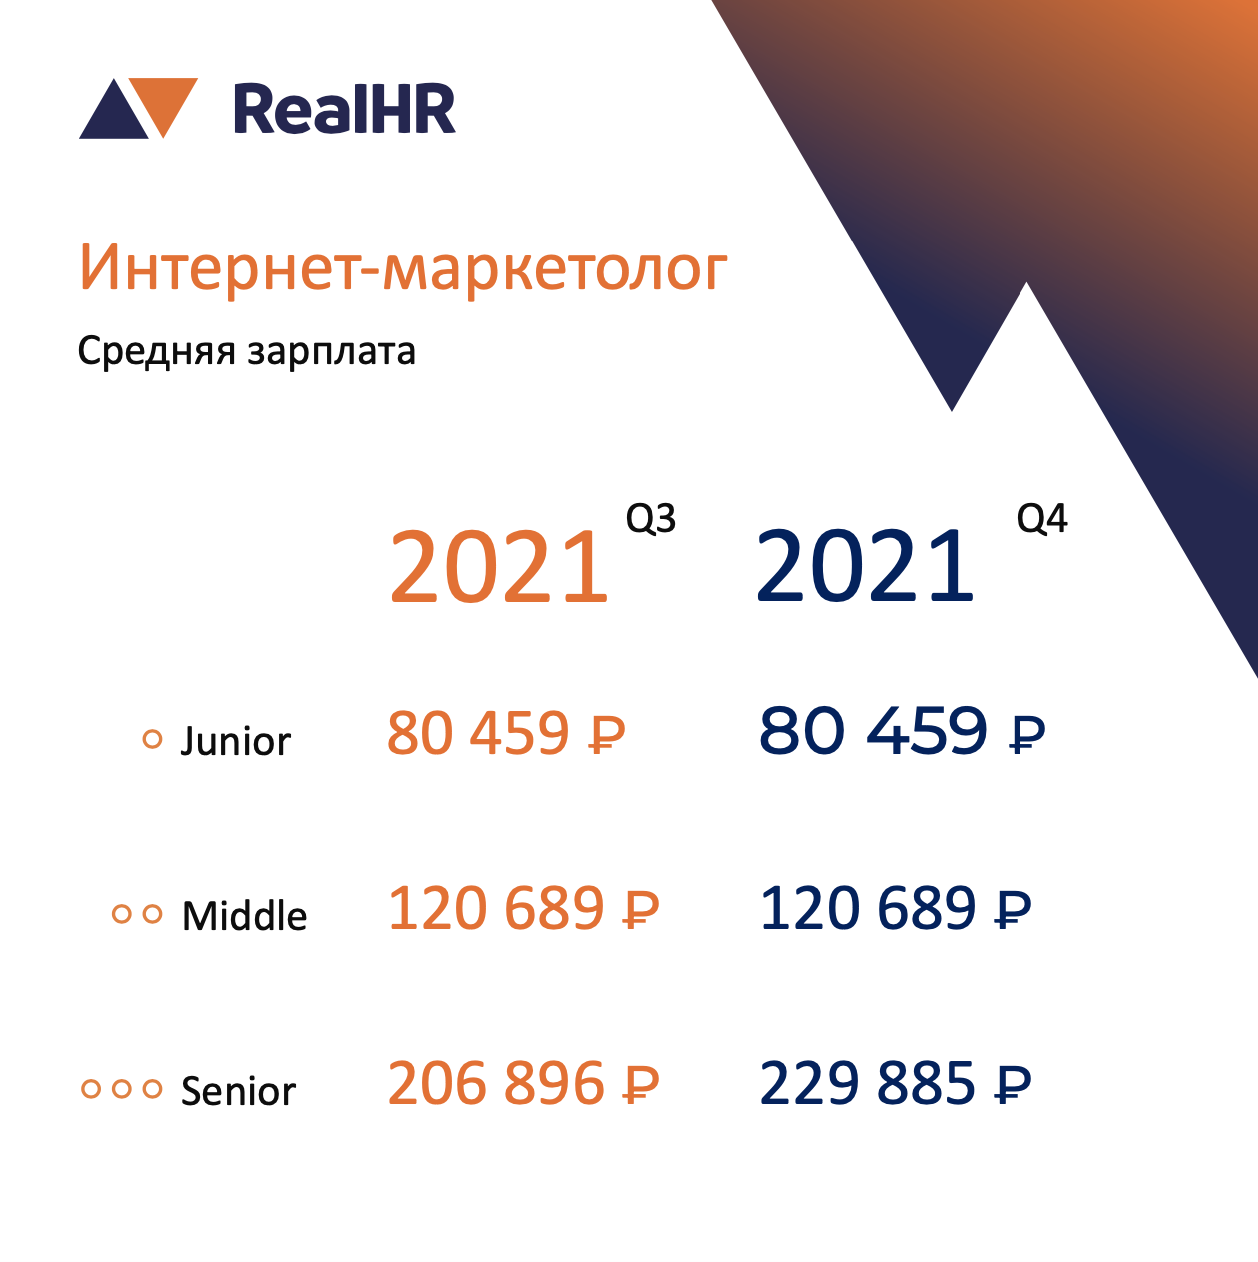 аналитика зарплат от RealHR